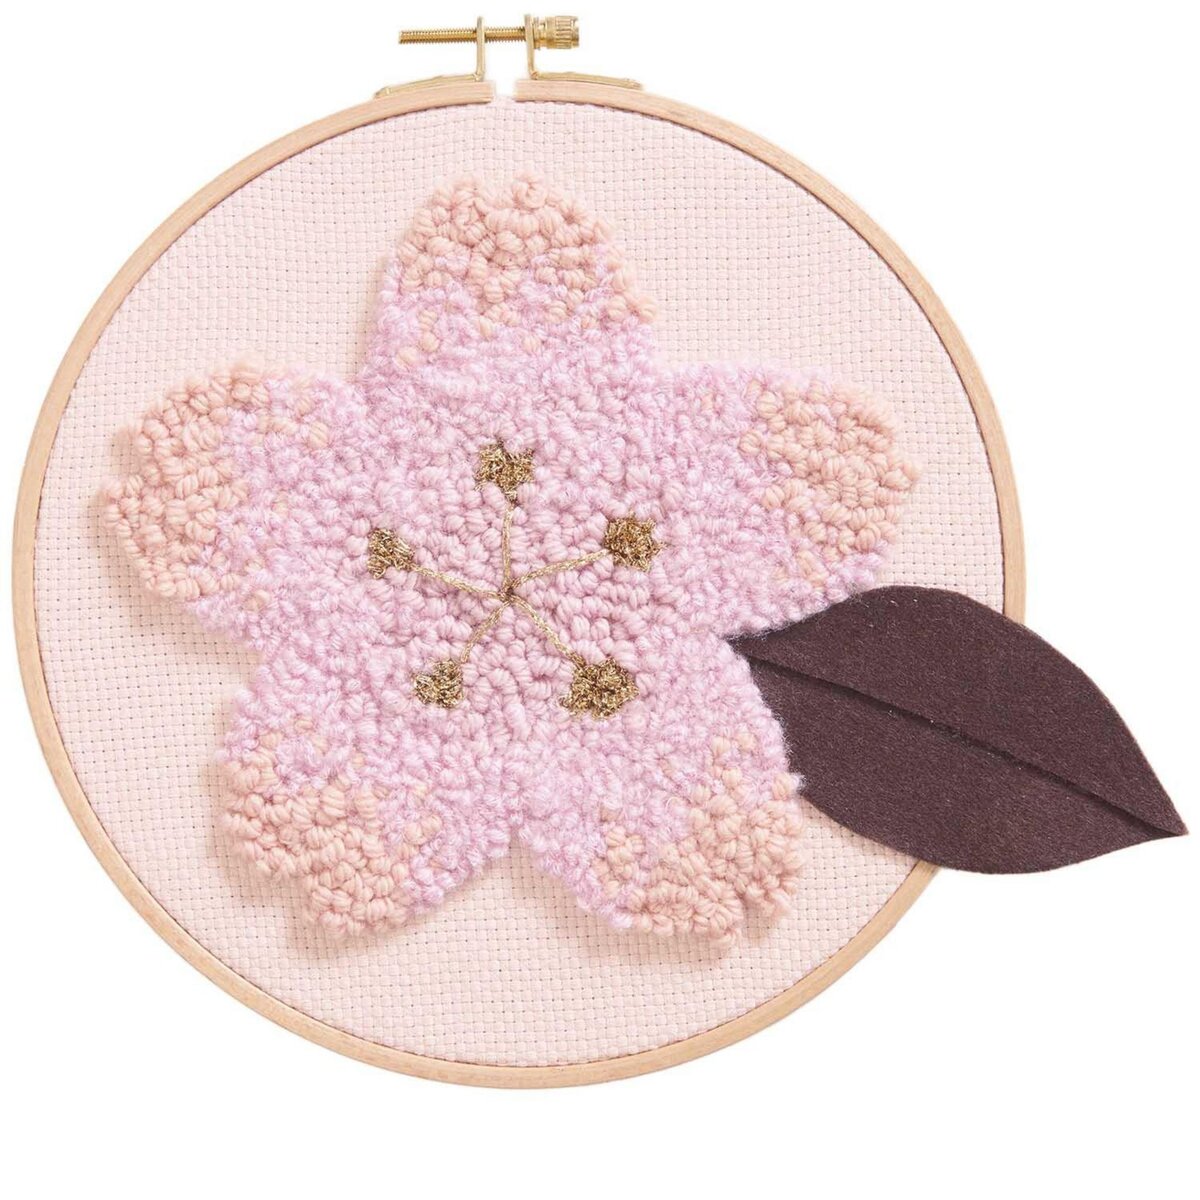 RICO DESIGN Coffret punch needle fleur de cerisier Ø 21,5 cm